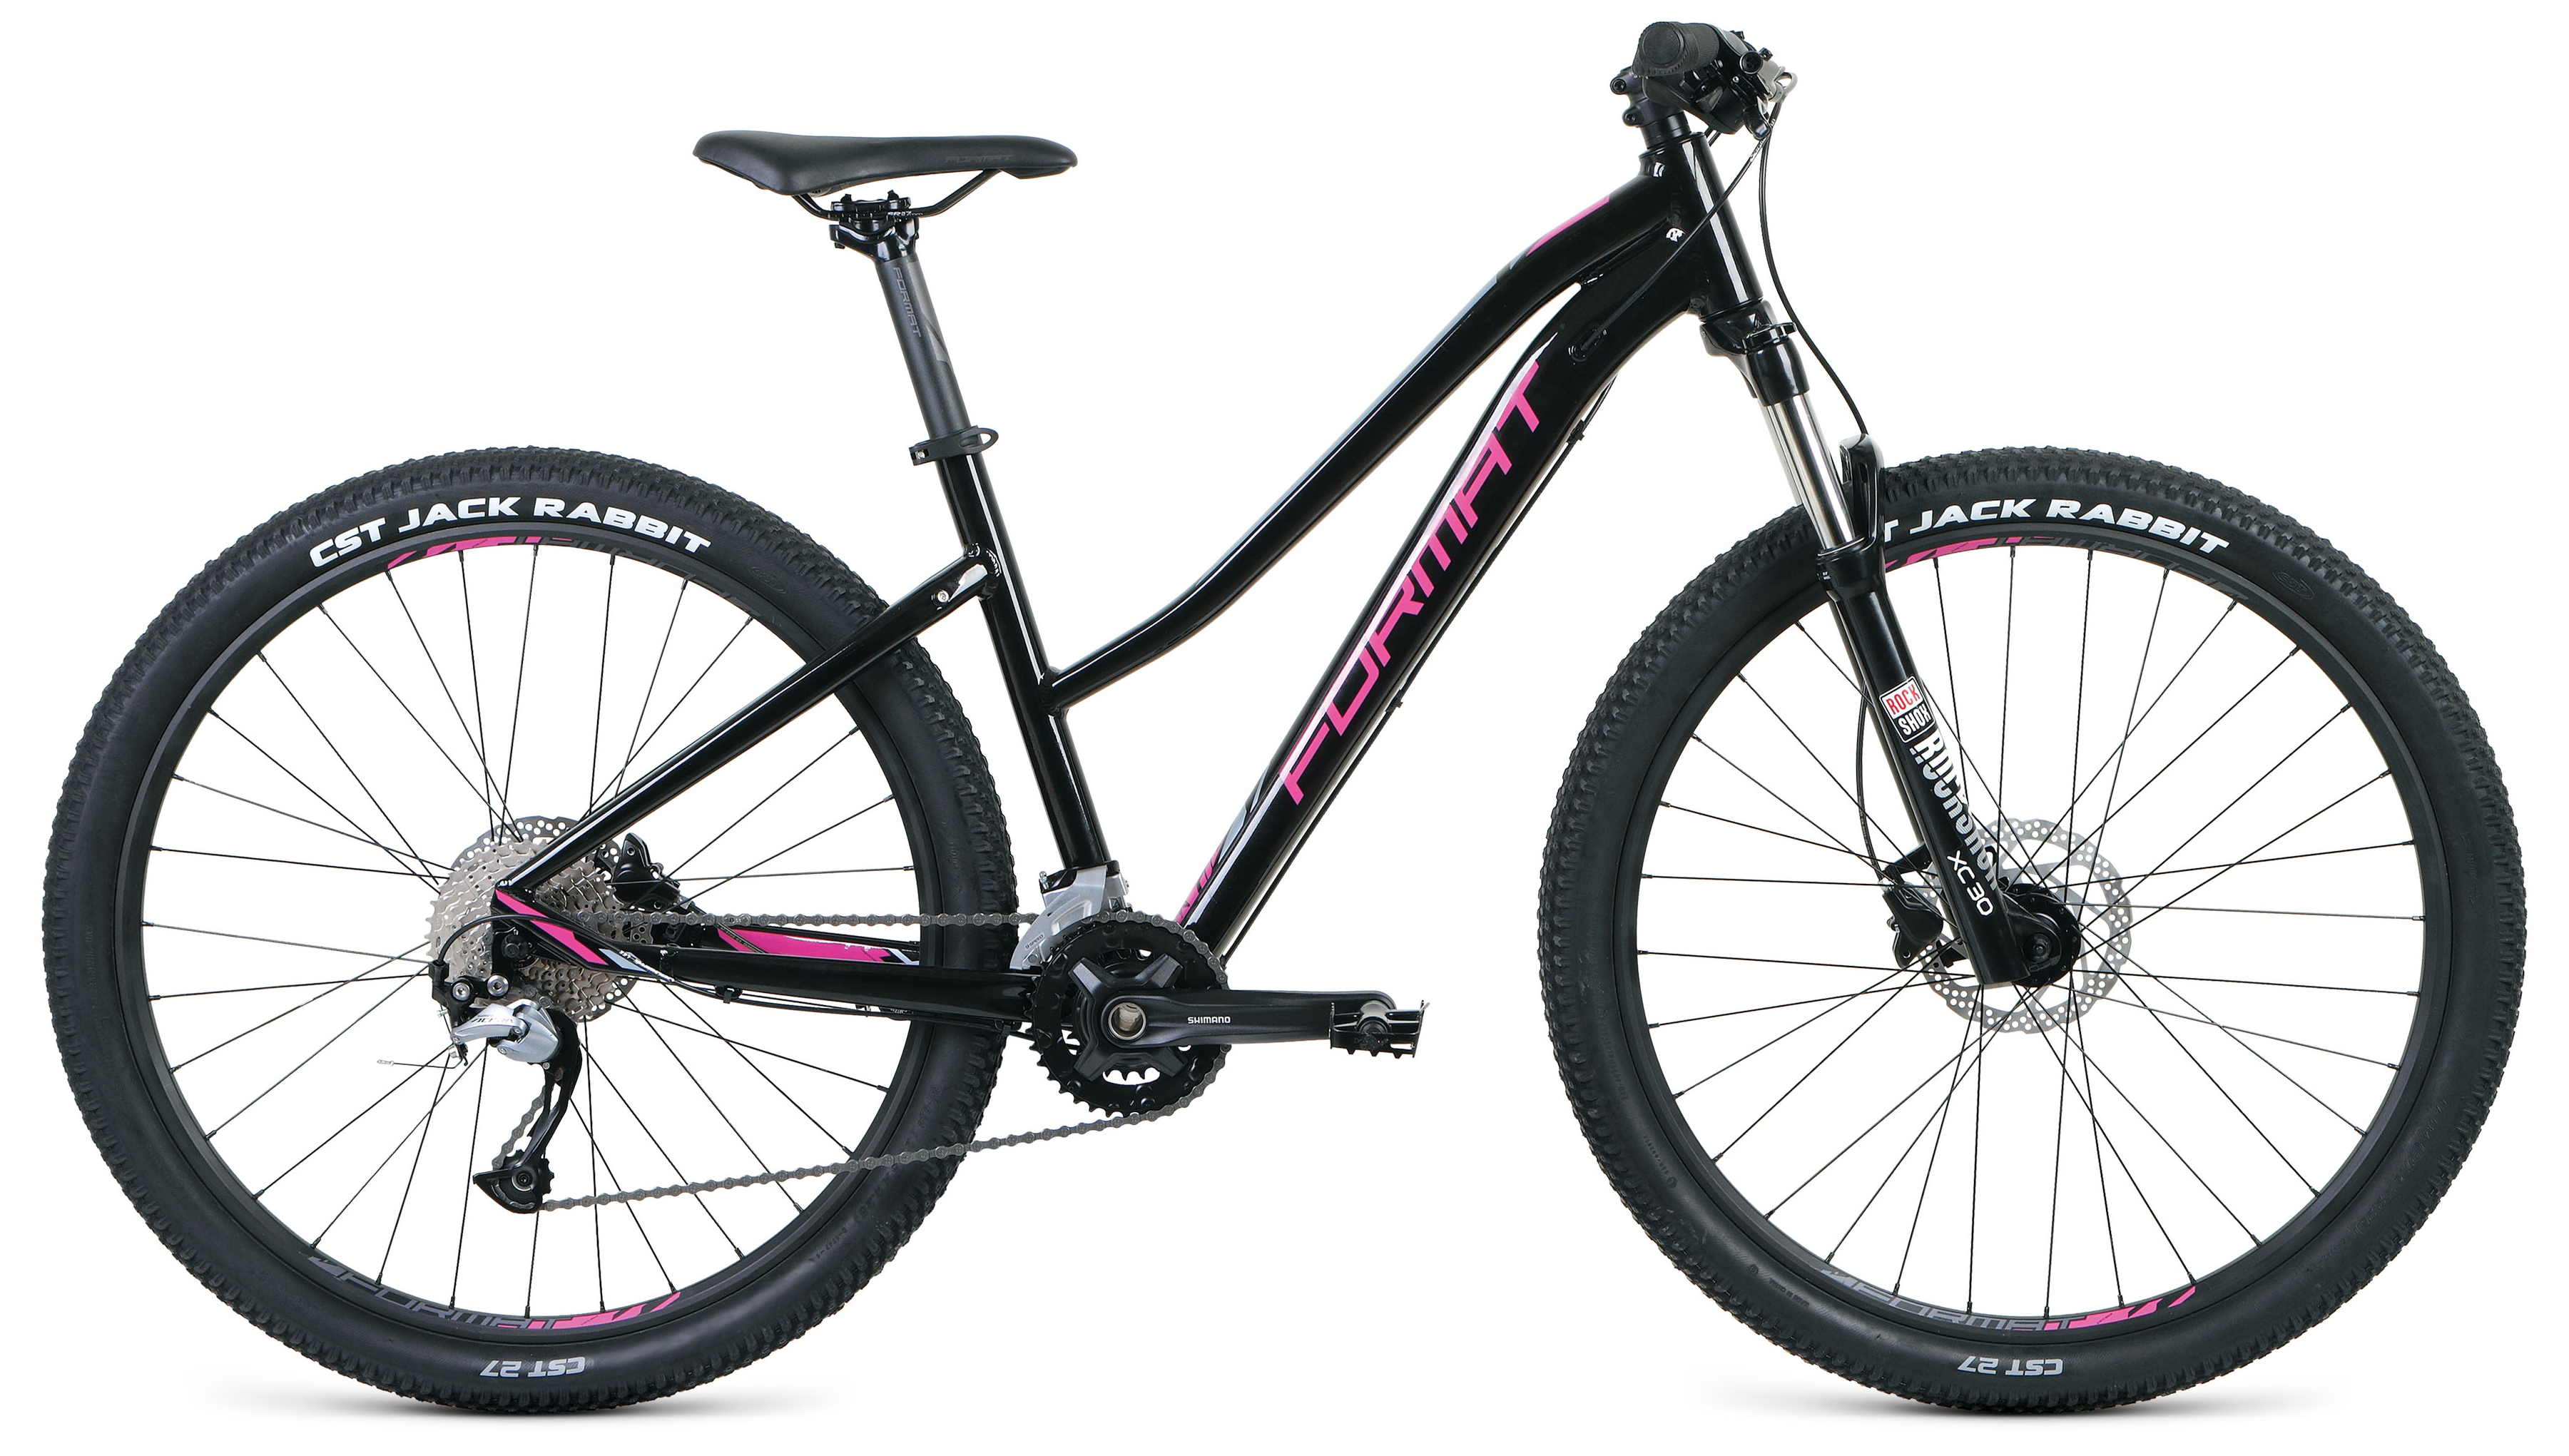  Отзывы о Женском велосипеде Format 7711 2020